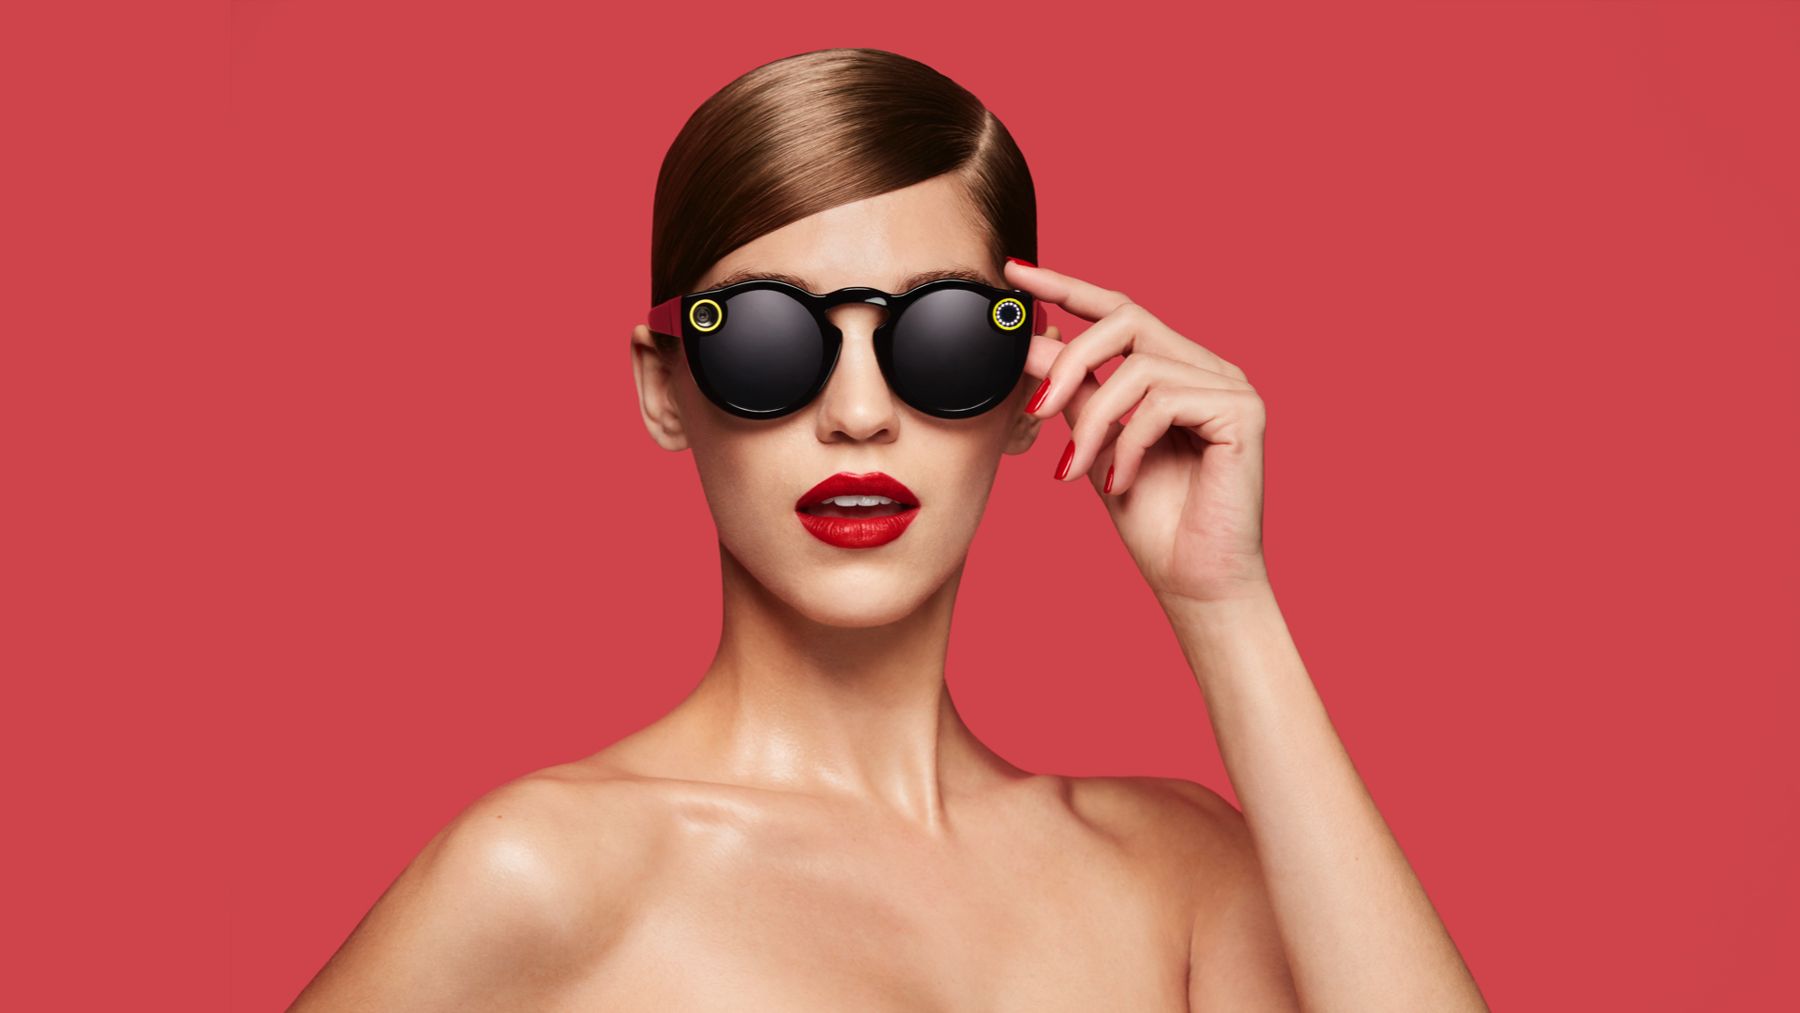 Ochelarii Snapchat sunt acum disponibili - Dar ce sunt exact?